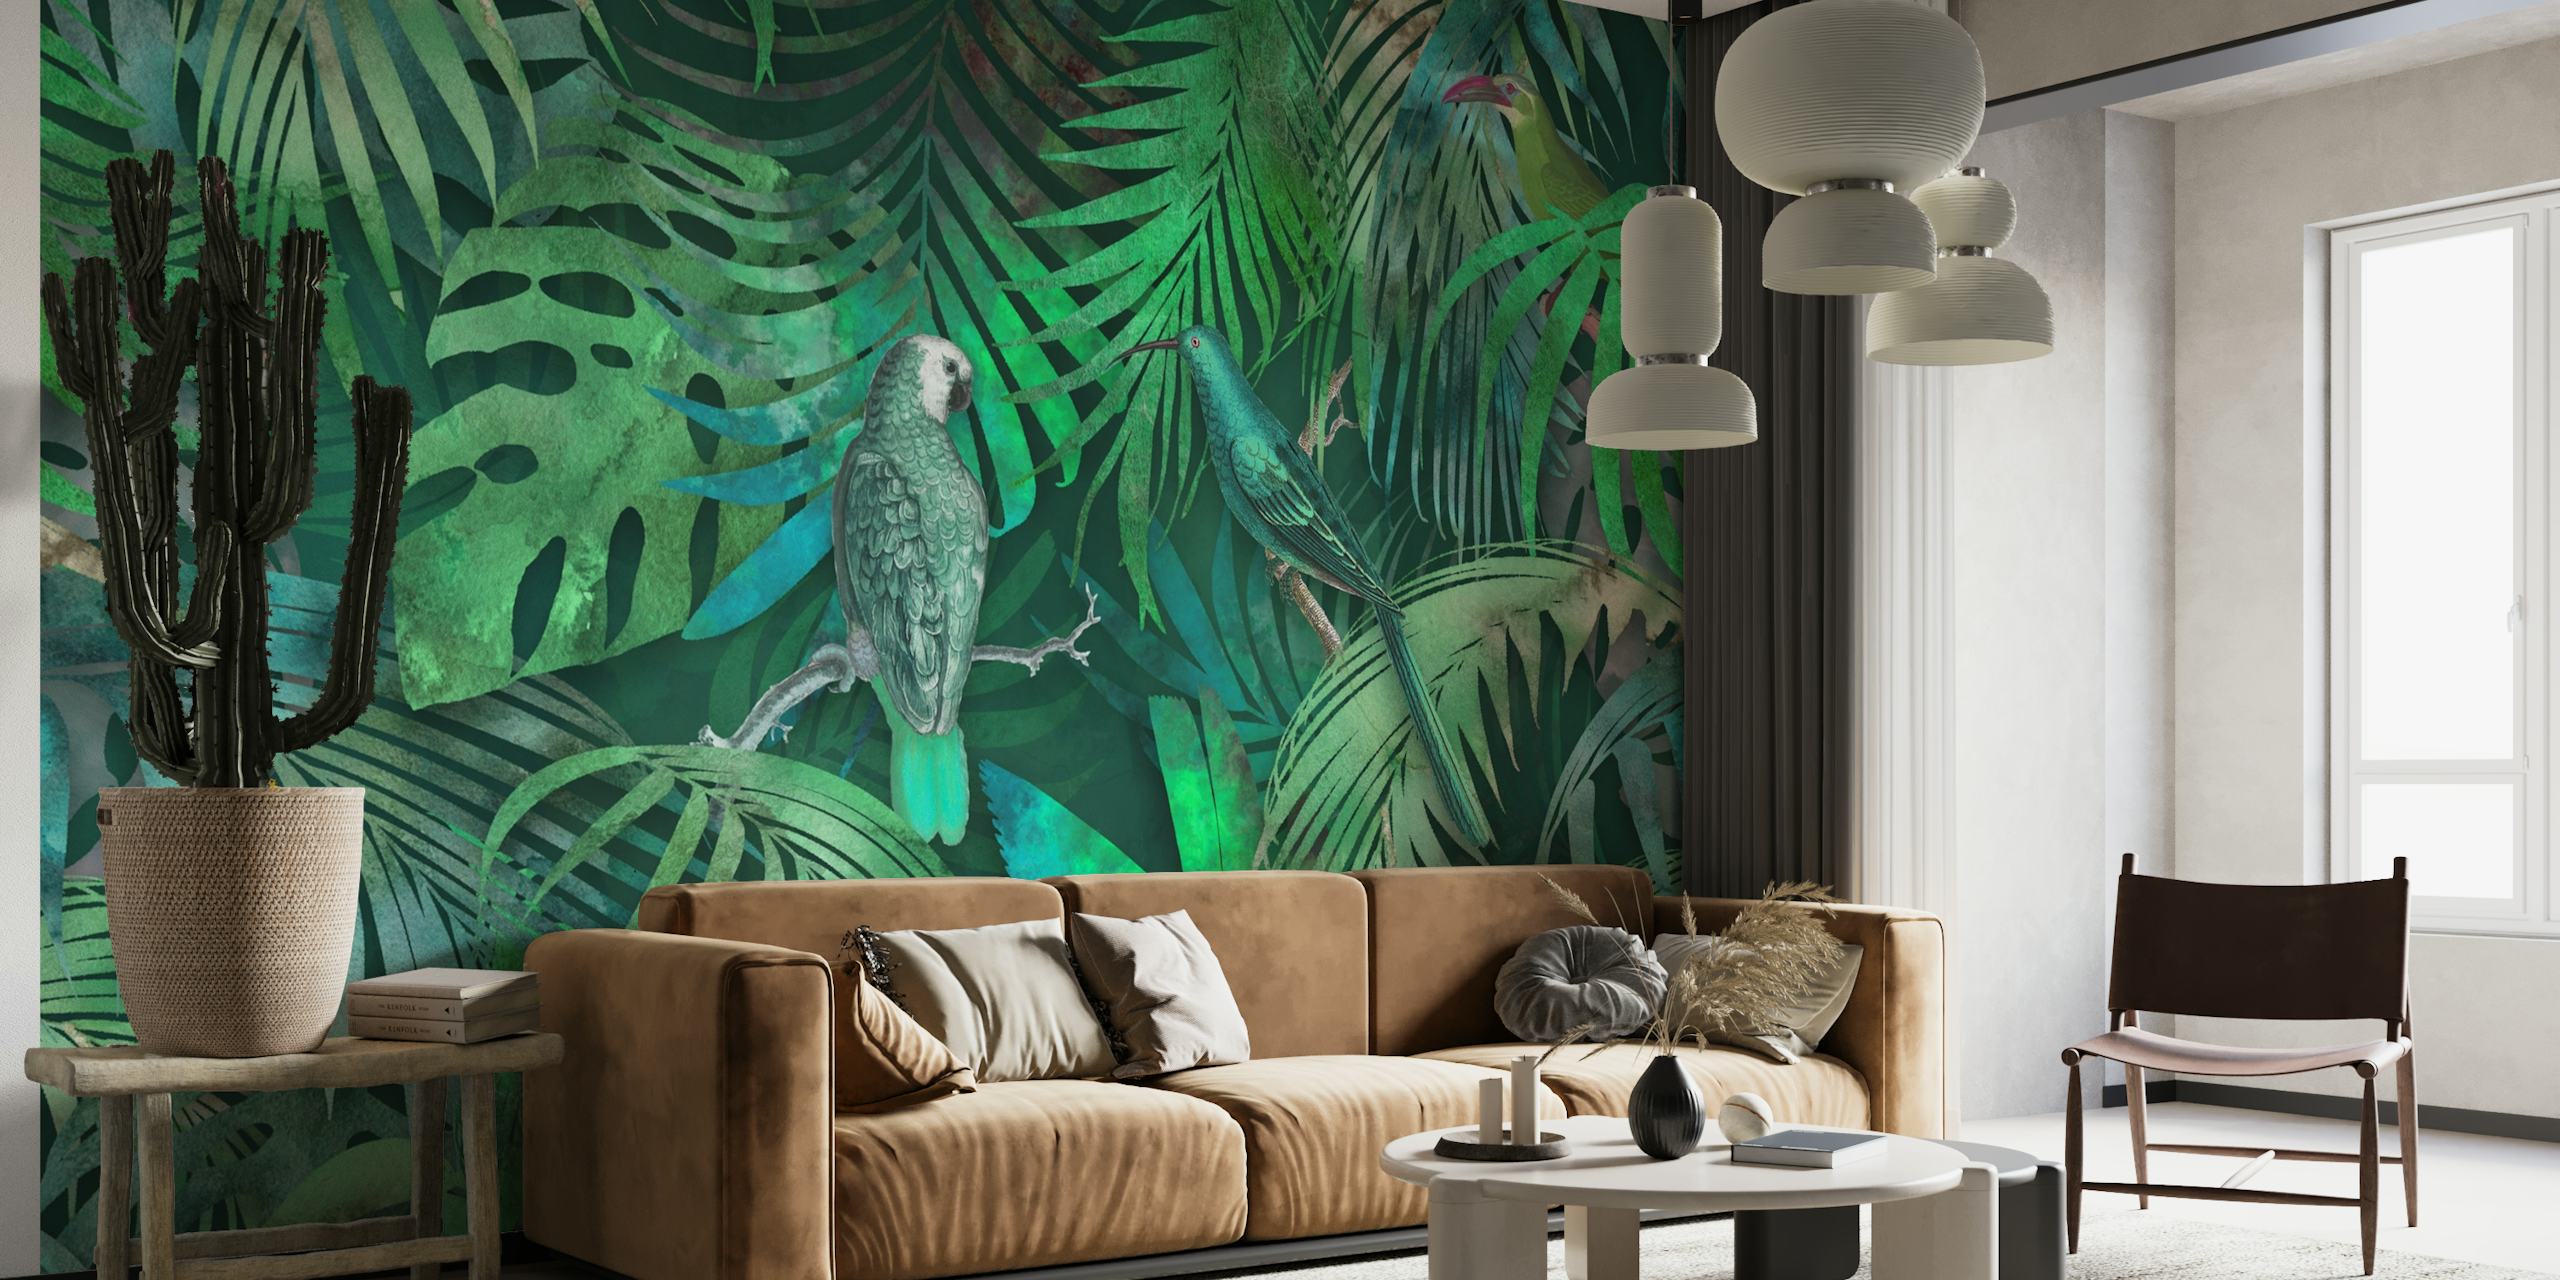 Et grønt vægmaleri med papegøjer gemt blandt tropiske blade